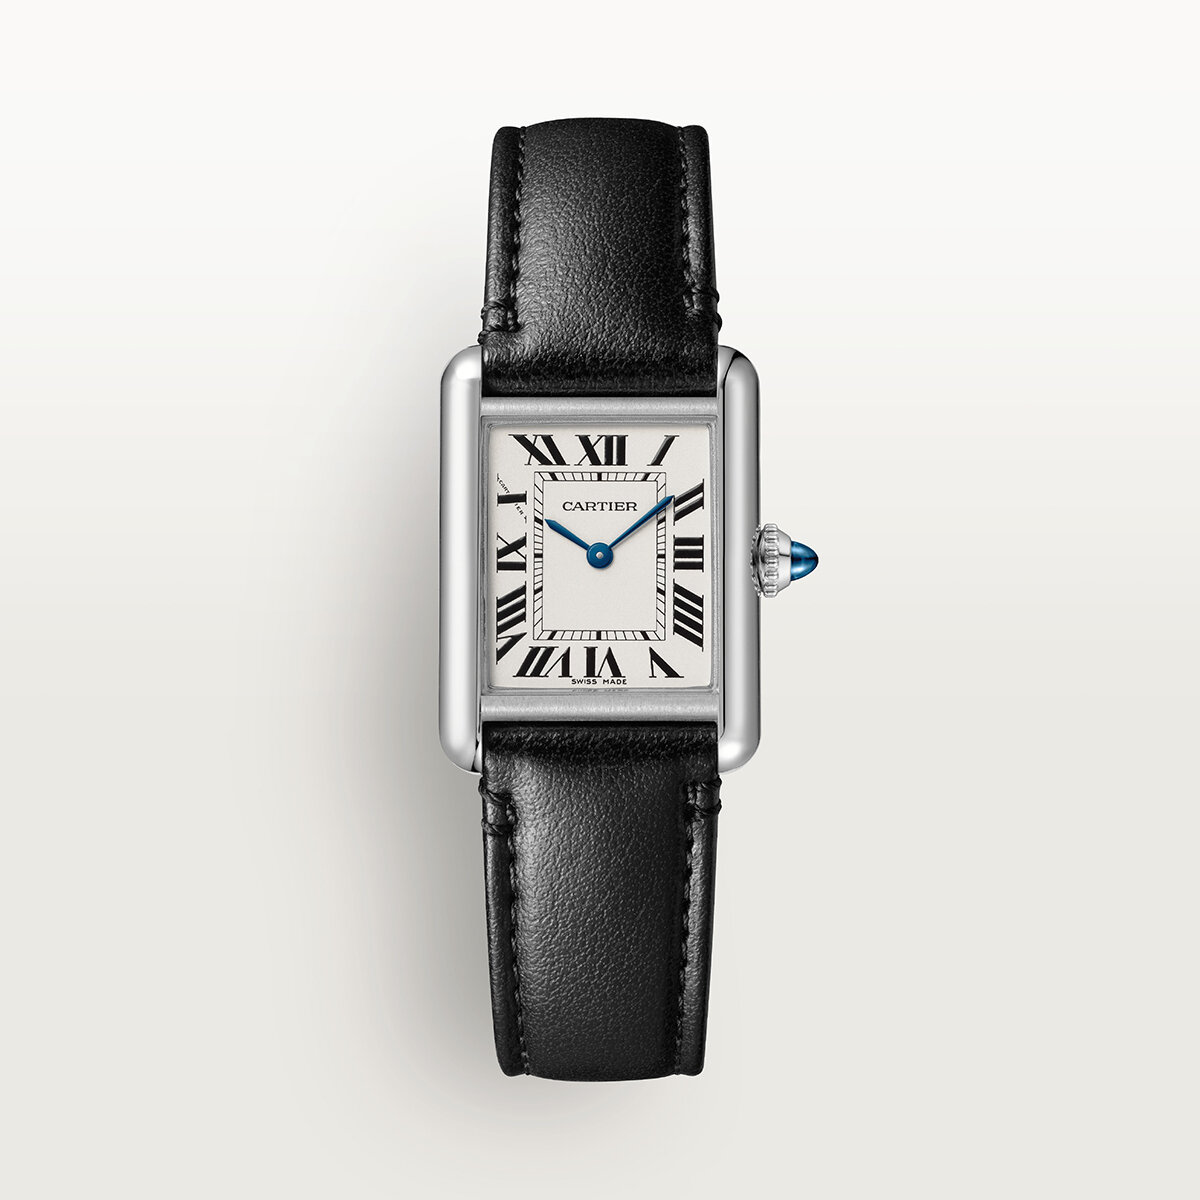 Must de Cartier Watch